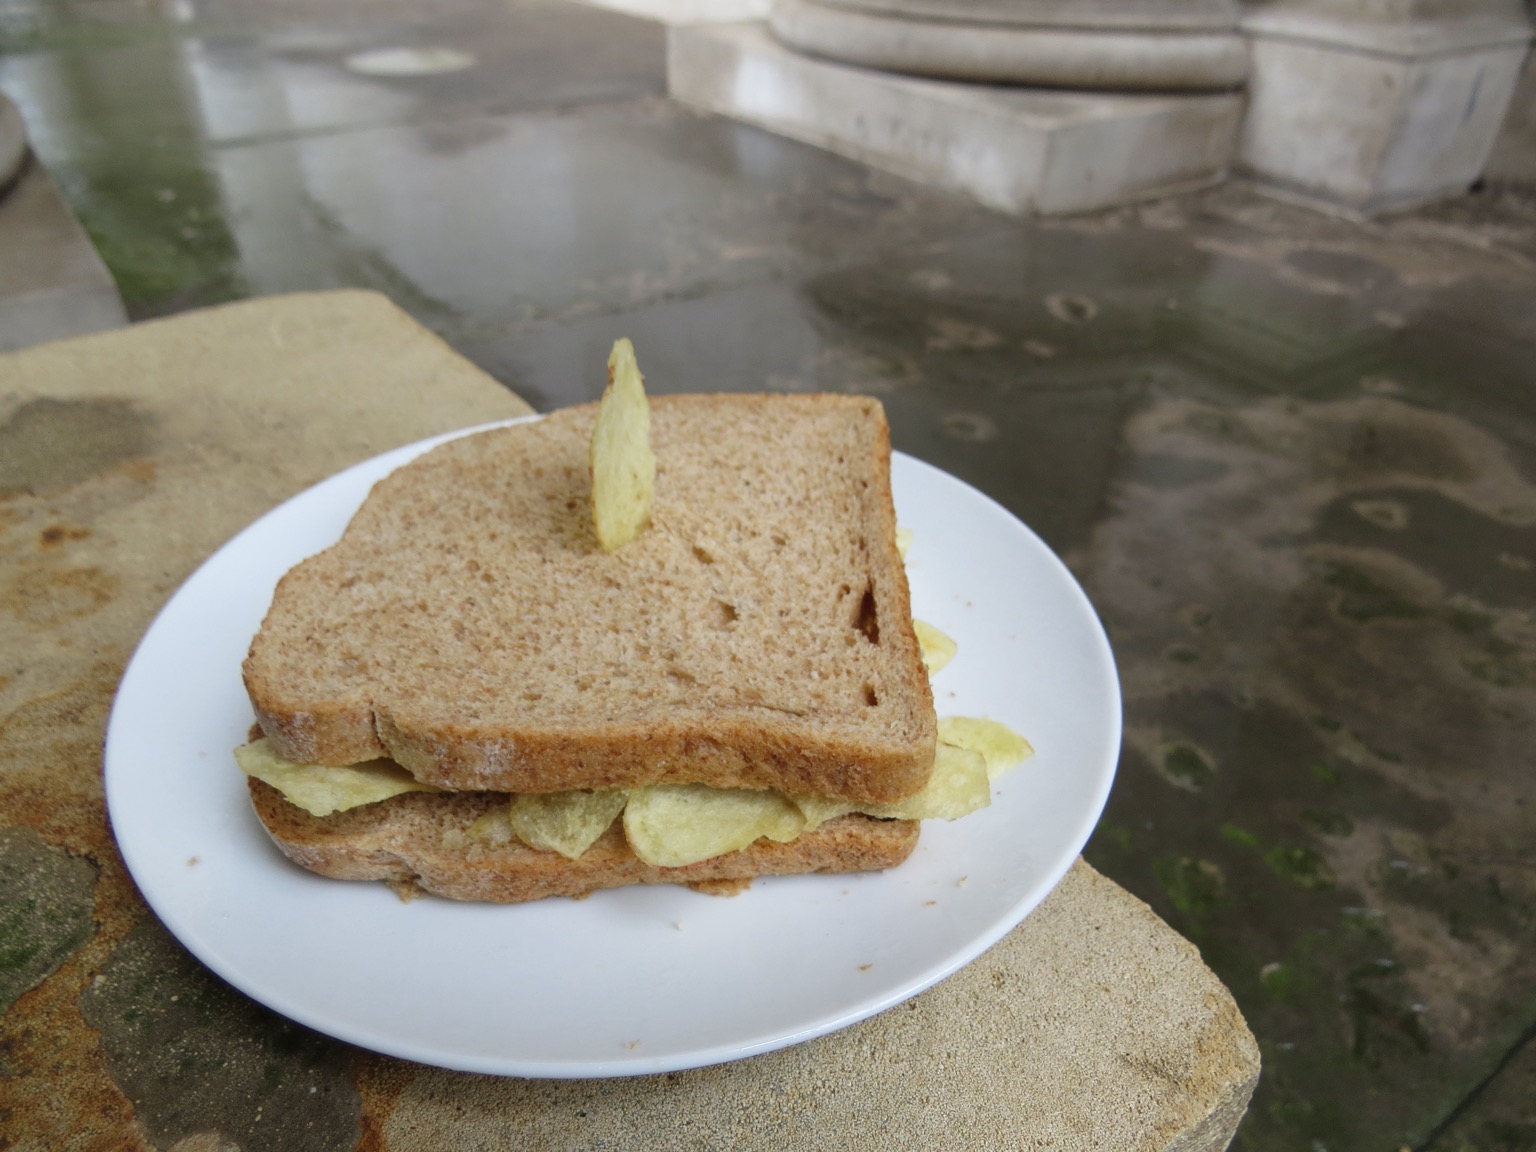 Crisp sandwich with crisp stuck in it on a plate